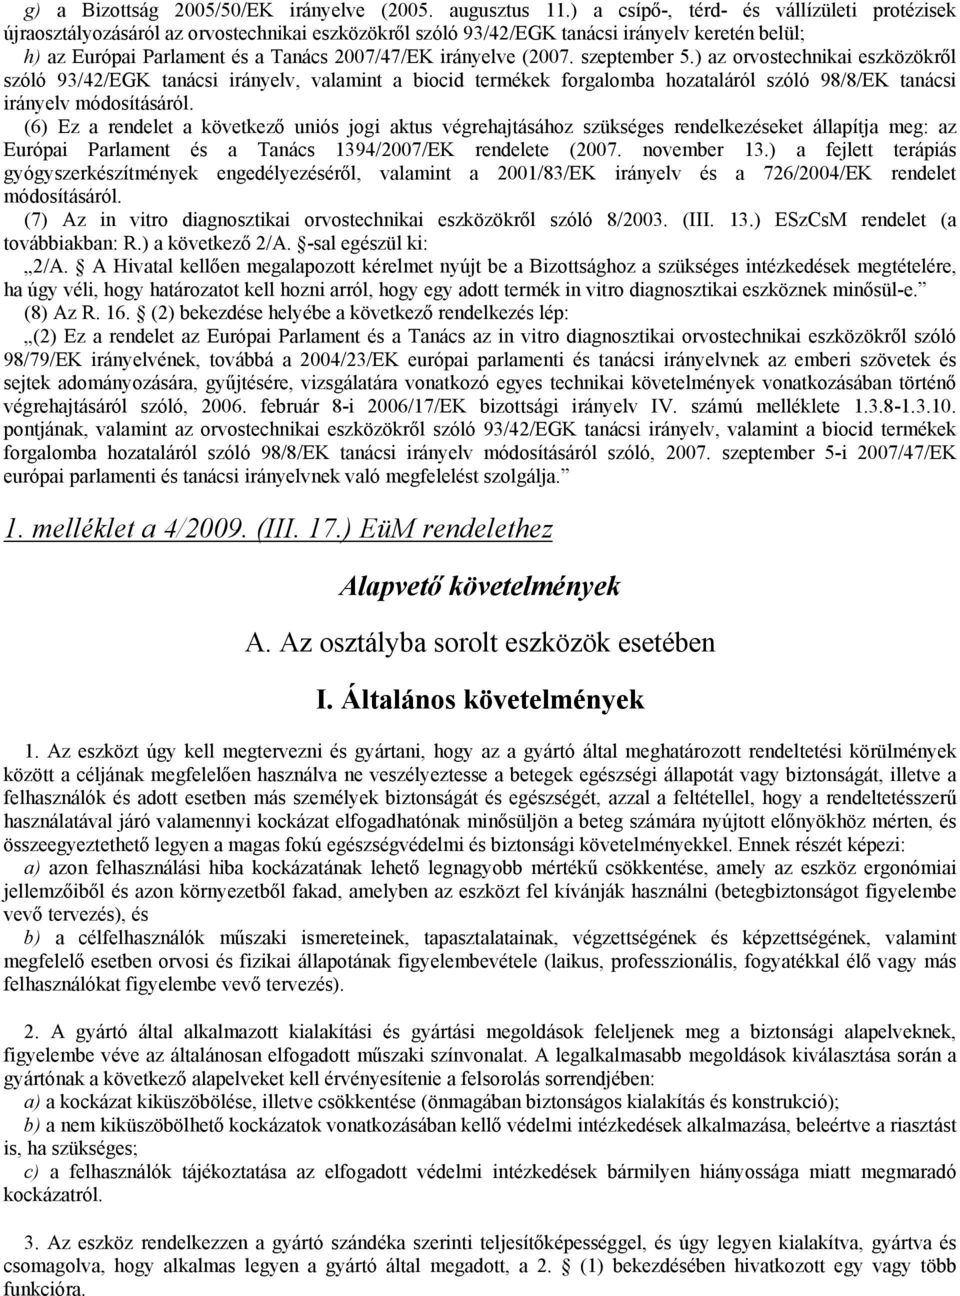 (2007. szeptember 5.) az orvostechnikai eszközökről szóló 93/42/EGK tanácsi irányelv, valamint a biocid termékek forgalomba hozataláról szóló 98/8/EK tanácsi irányelv módosításáról.